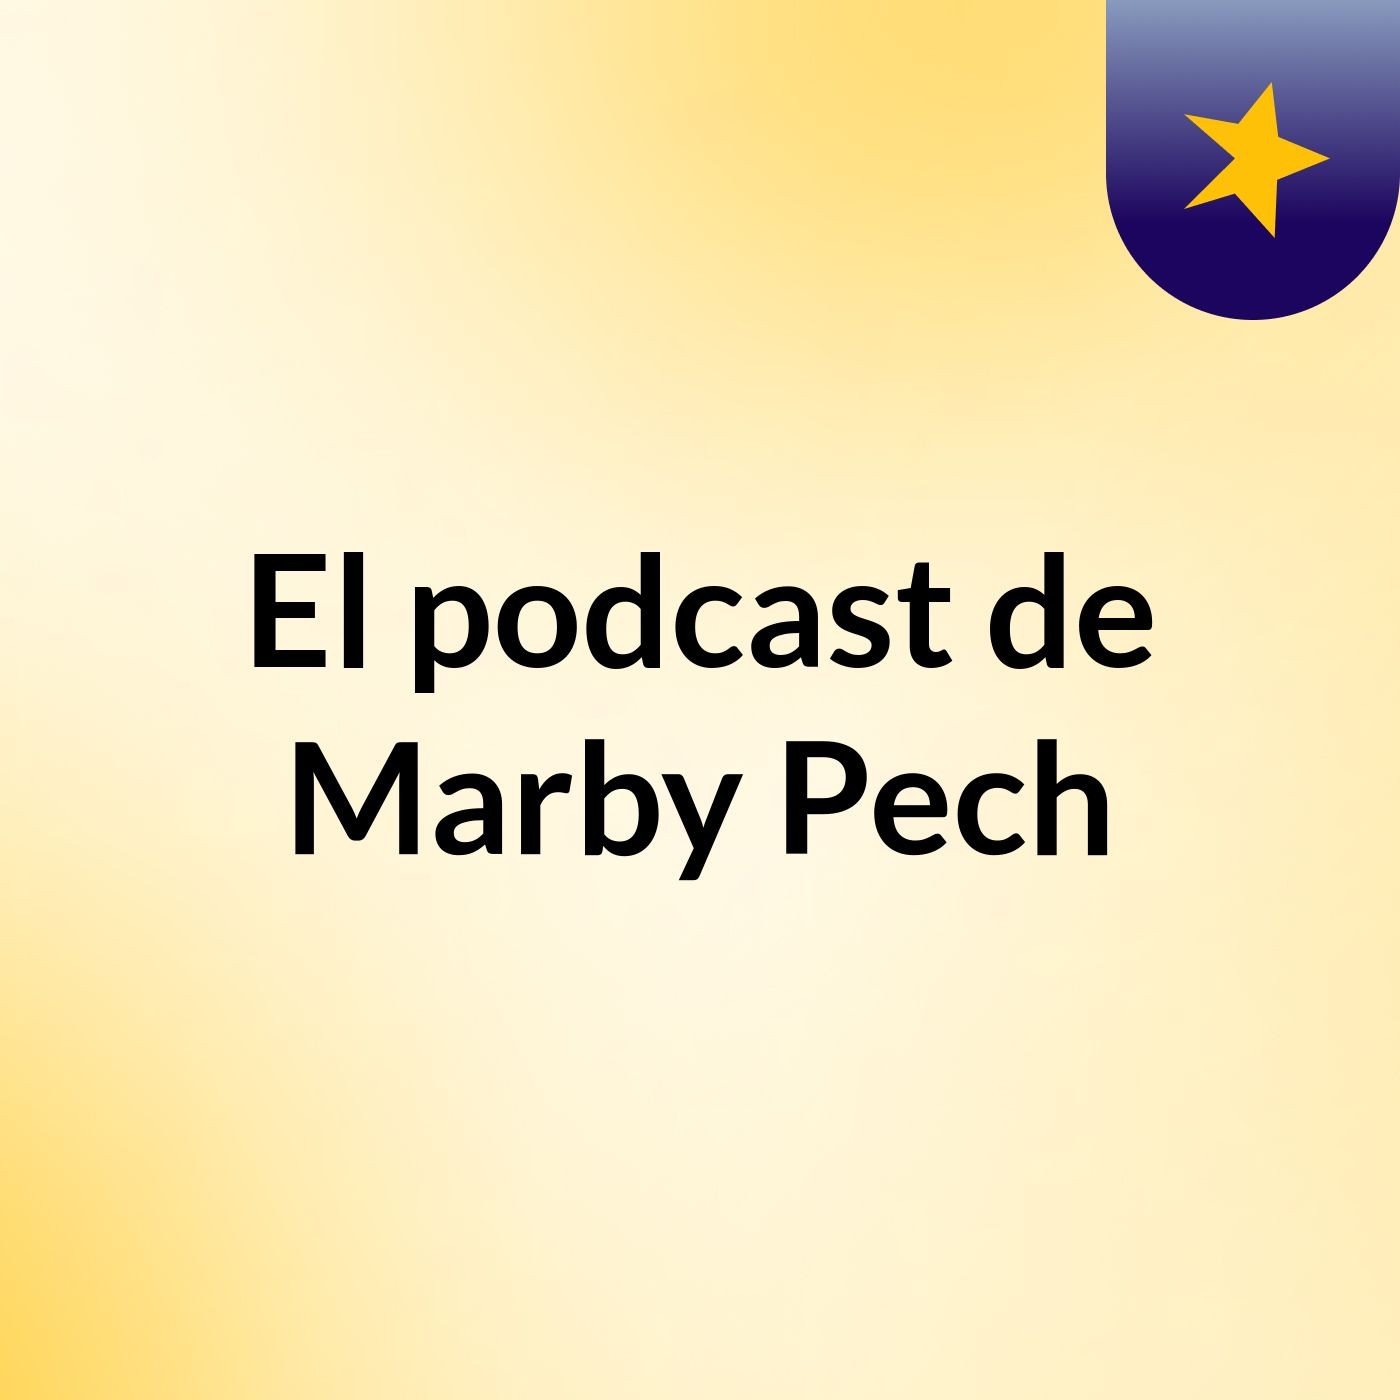 El podcast de Marby Pech